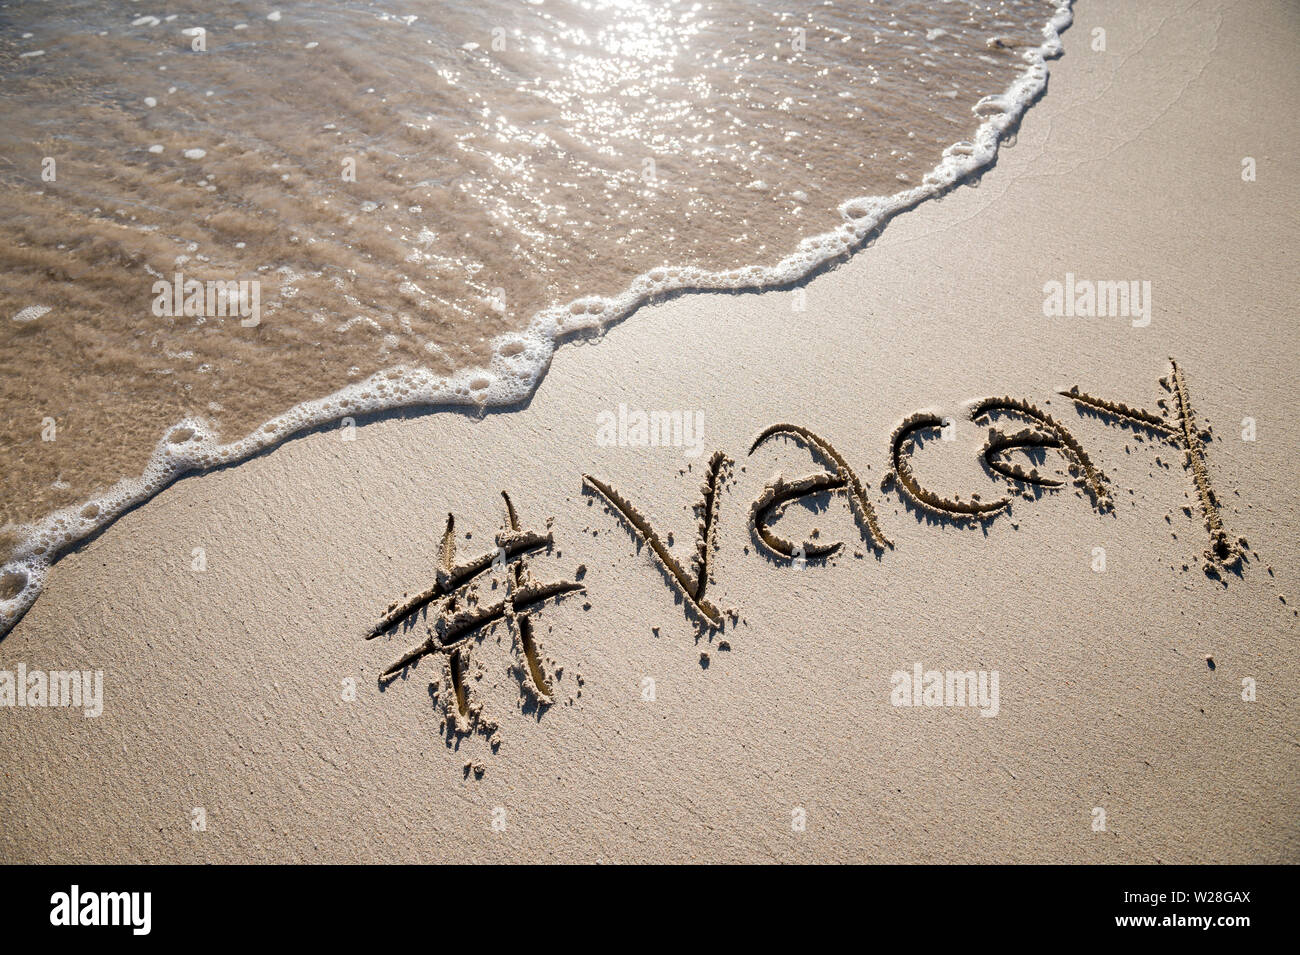 Modernes reisen Nachricht für den Strand mit einem Social Media - freundliche Hashtag mit dem Wort "vacay" in sanften Sand mit ankommenden Welle geschrieben Stockfoto